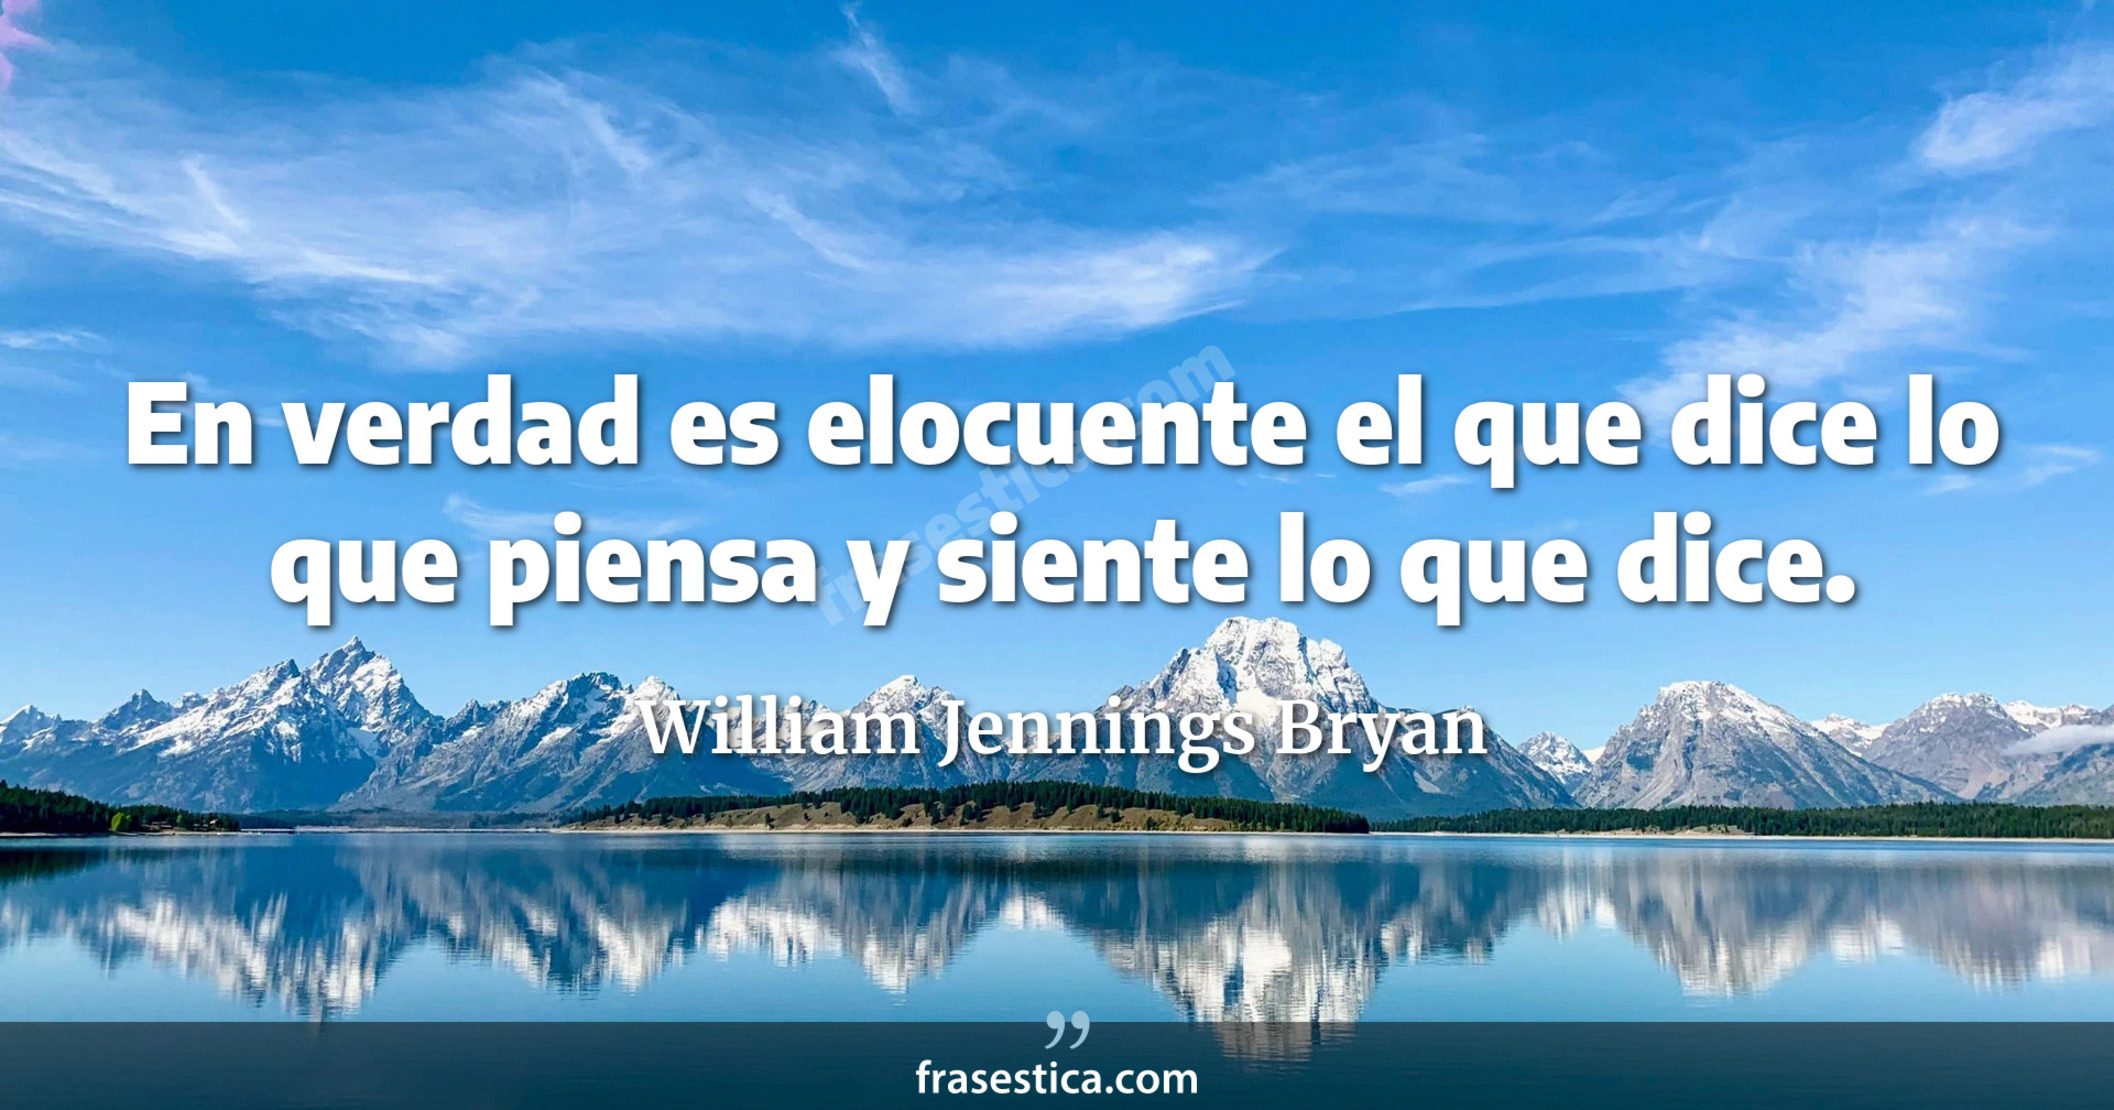 En verdad es elocuente el que dice lo que piensa y siente lo que dice. - William Jennings Bryan